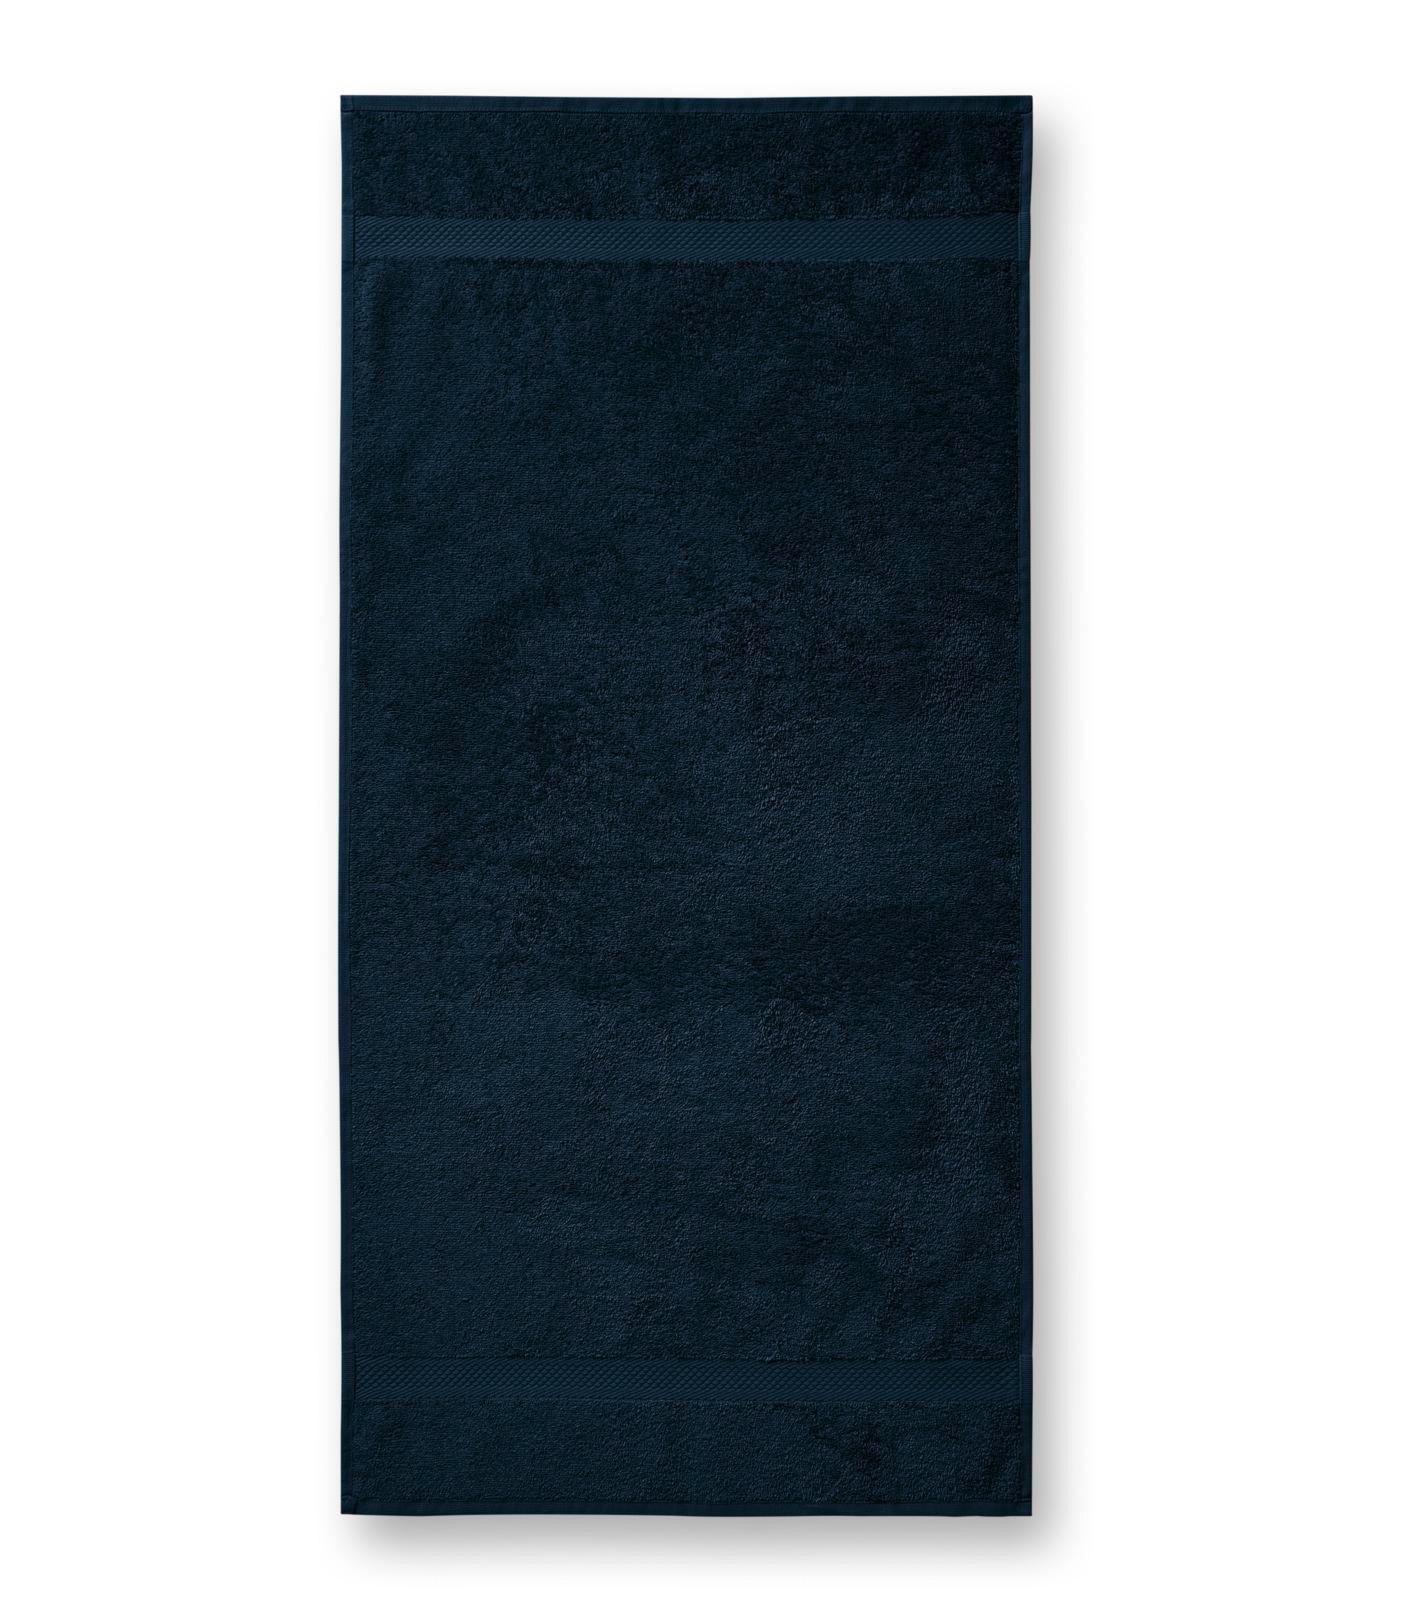 Terija cilpiņu auduma dvielis. Izmēr 50 x 100 cm. Navy blue krāsā ar bodņu abos galos.